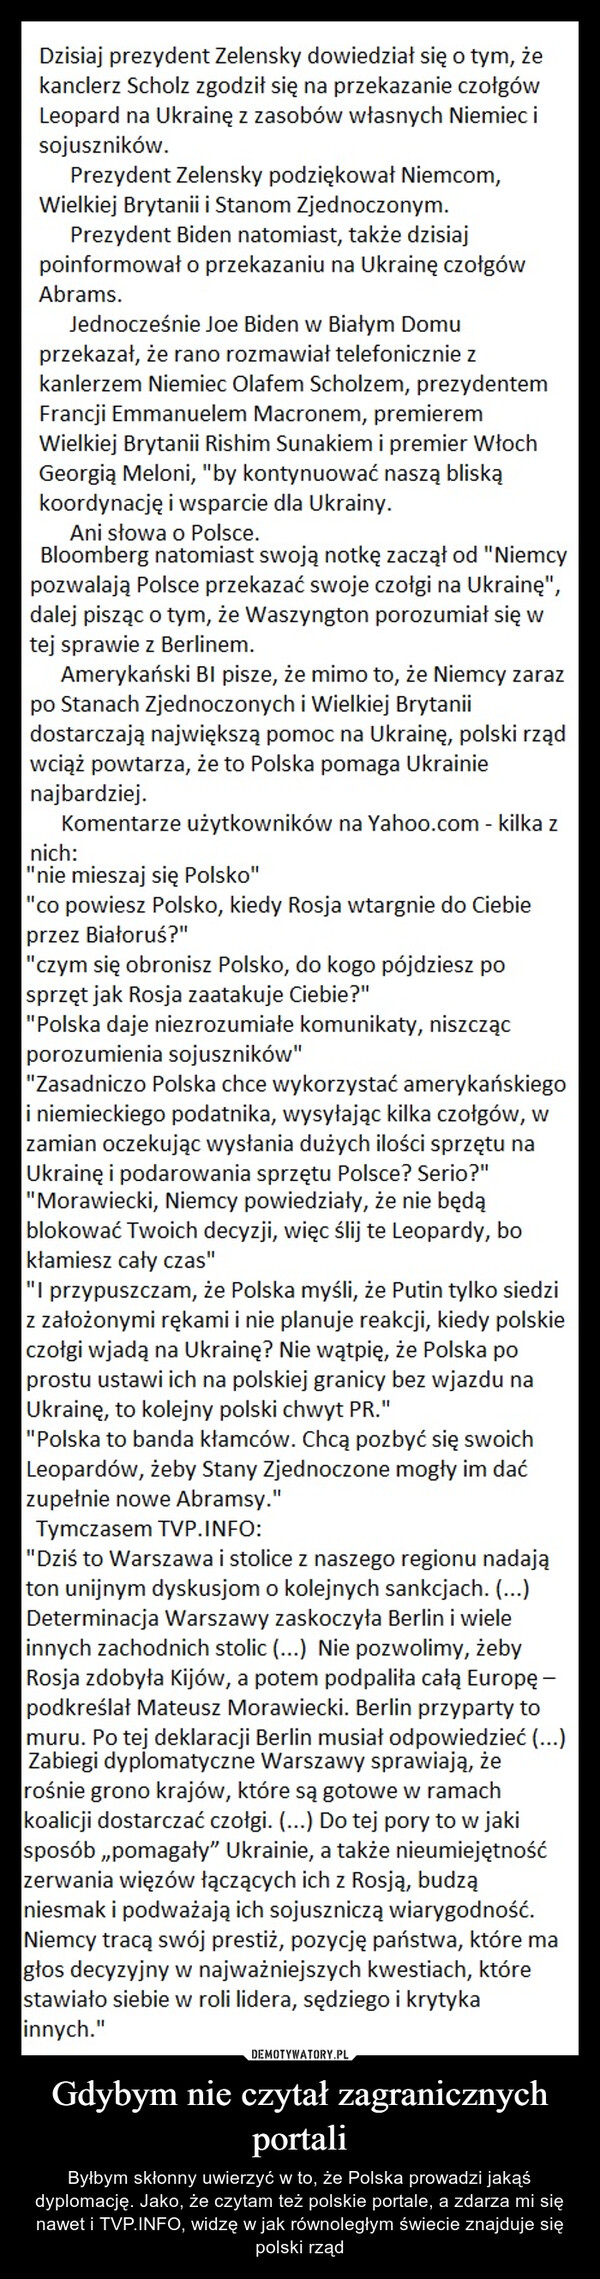 Gdybym nie czytał zagranicznych portali – Byłbym skłonny uwierzyć w to, że Polska prowadzi jakąś dyplomację. Jako, że czytam też polskie portale, a zdarza mi się nawet i TVP.INFO, widzę w jak równoległym świecie znajduje się polski rząd 